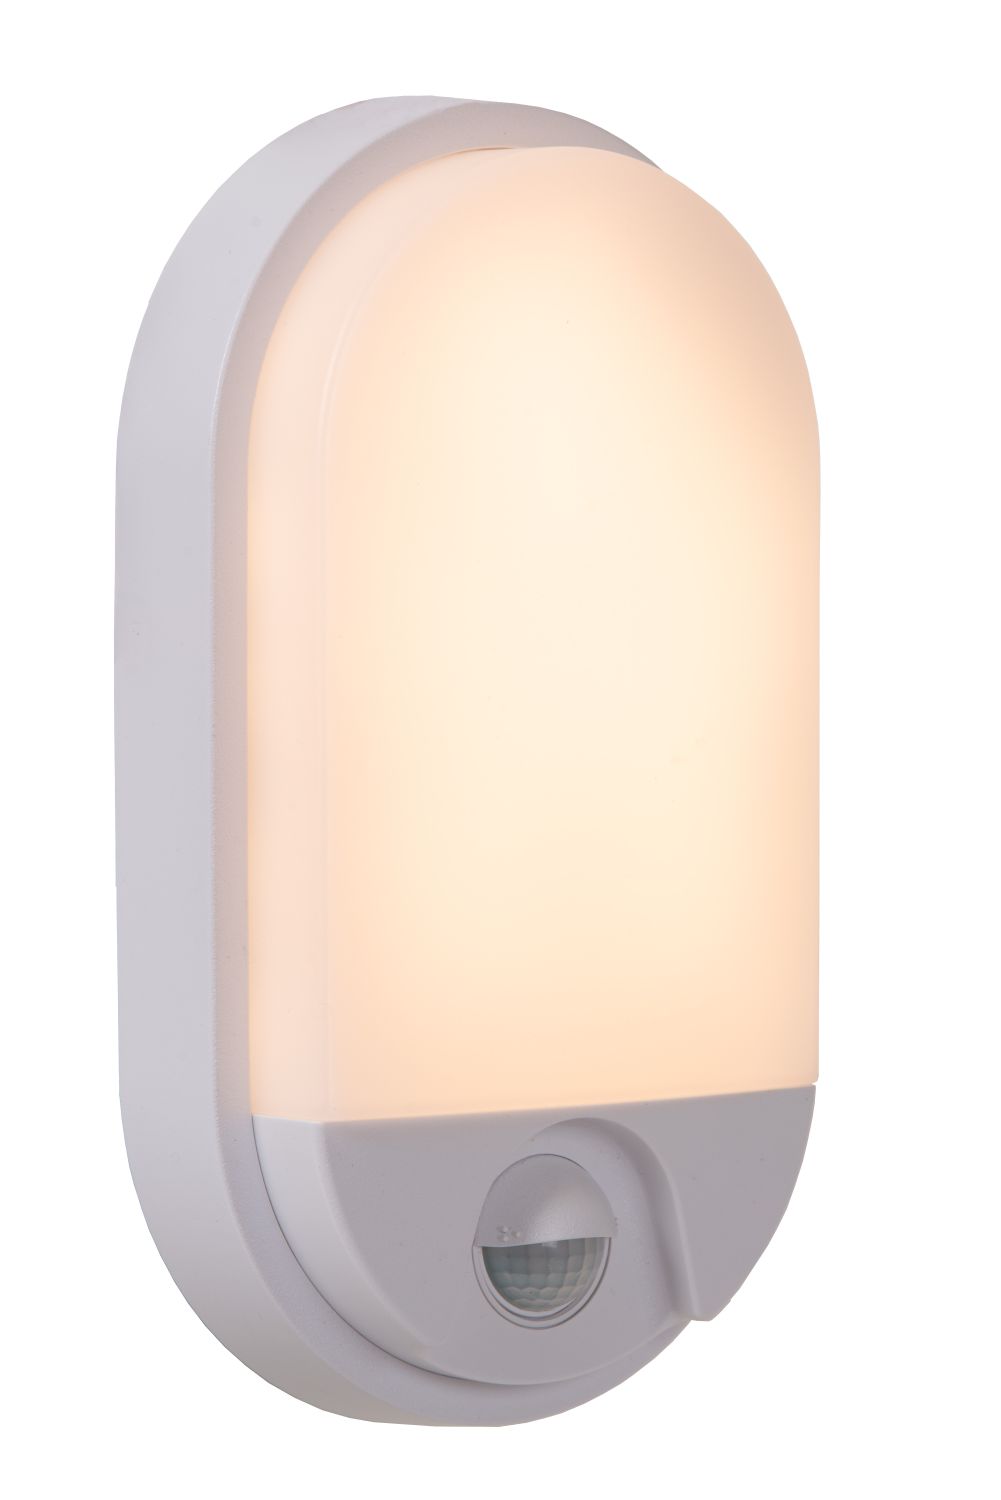 Hups Lampa kinkiet zewnętrzny LED + czujnik ruchu 10W 3000K IP54 biała 22864/10/31 Lucid